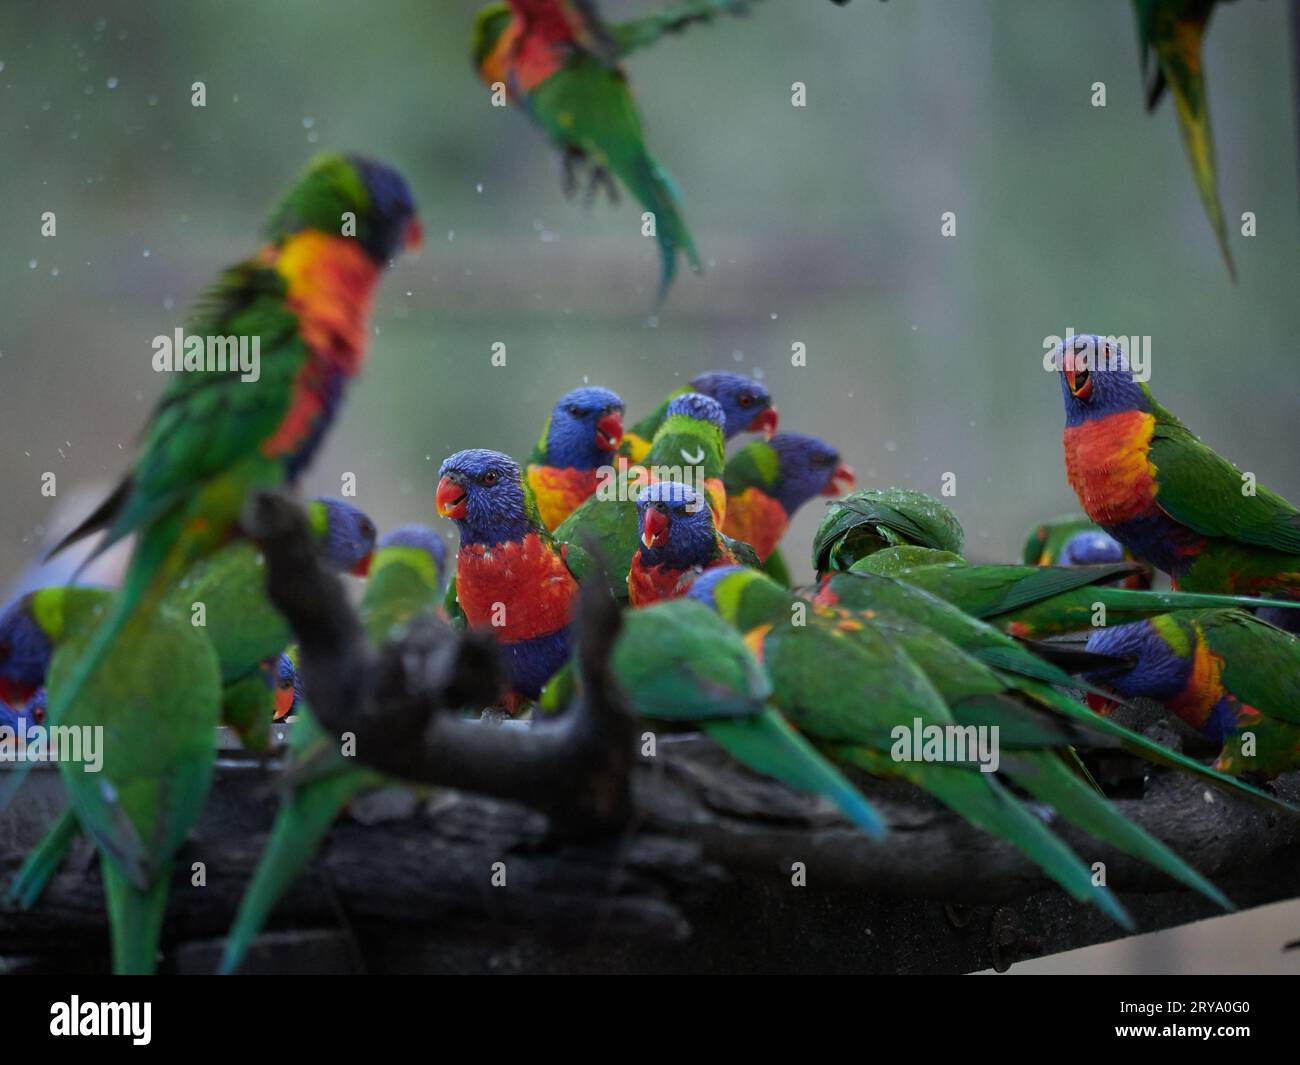 Rainbow Lorikeets se nourrissant à un poste d'alimentation fait par l'homme à Cania gorge Queensland Australie, des oiseaux aux couleurs vives et fougueux en vert, orange et bleu Banque D'Images